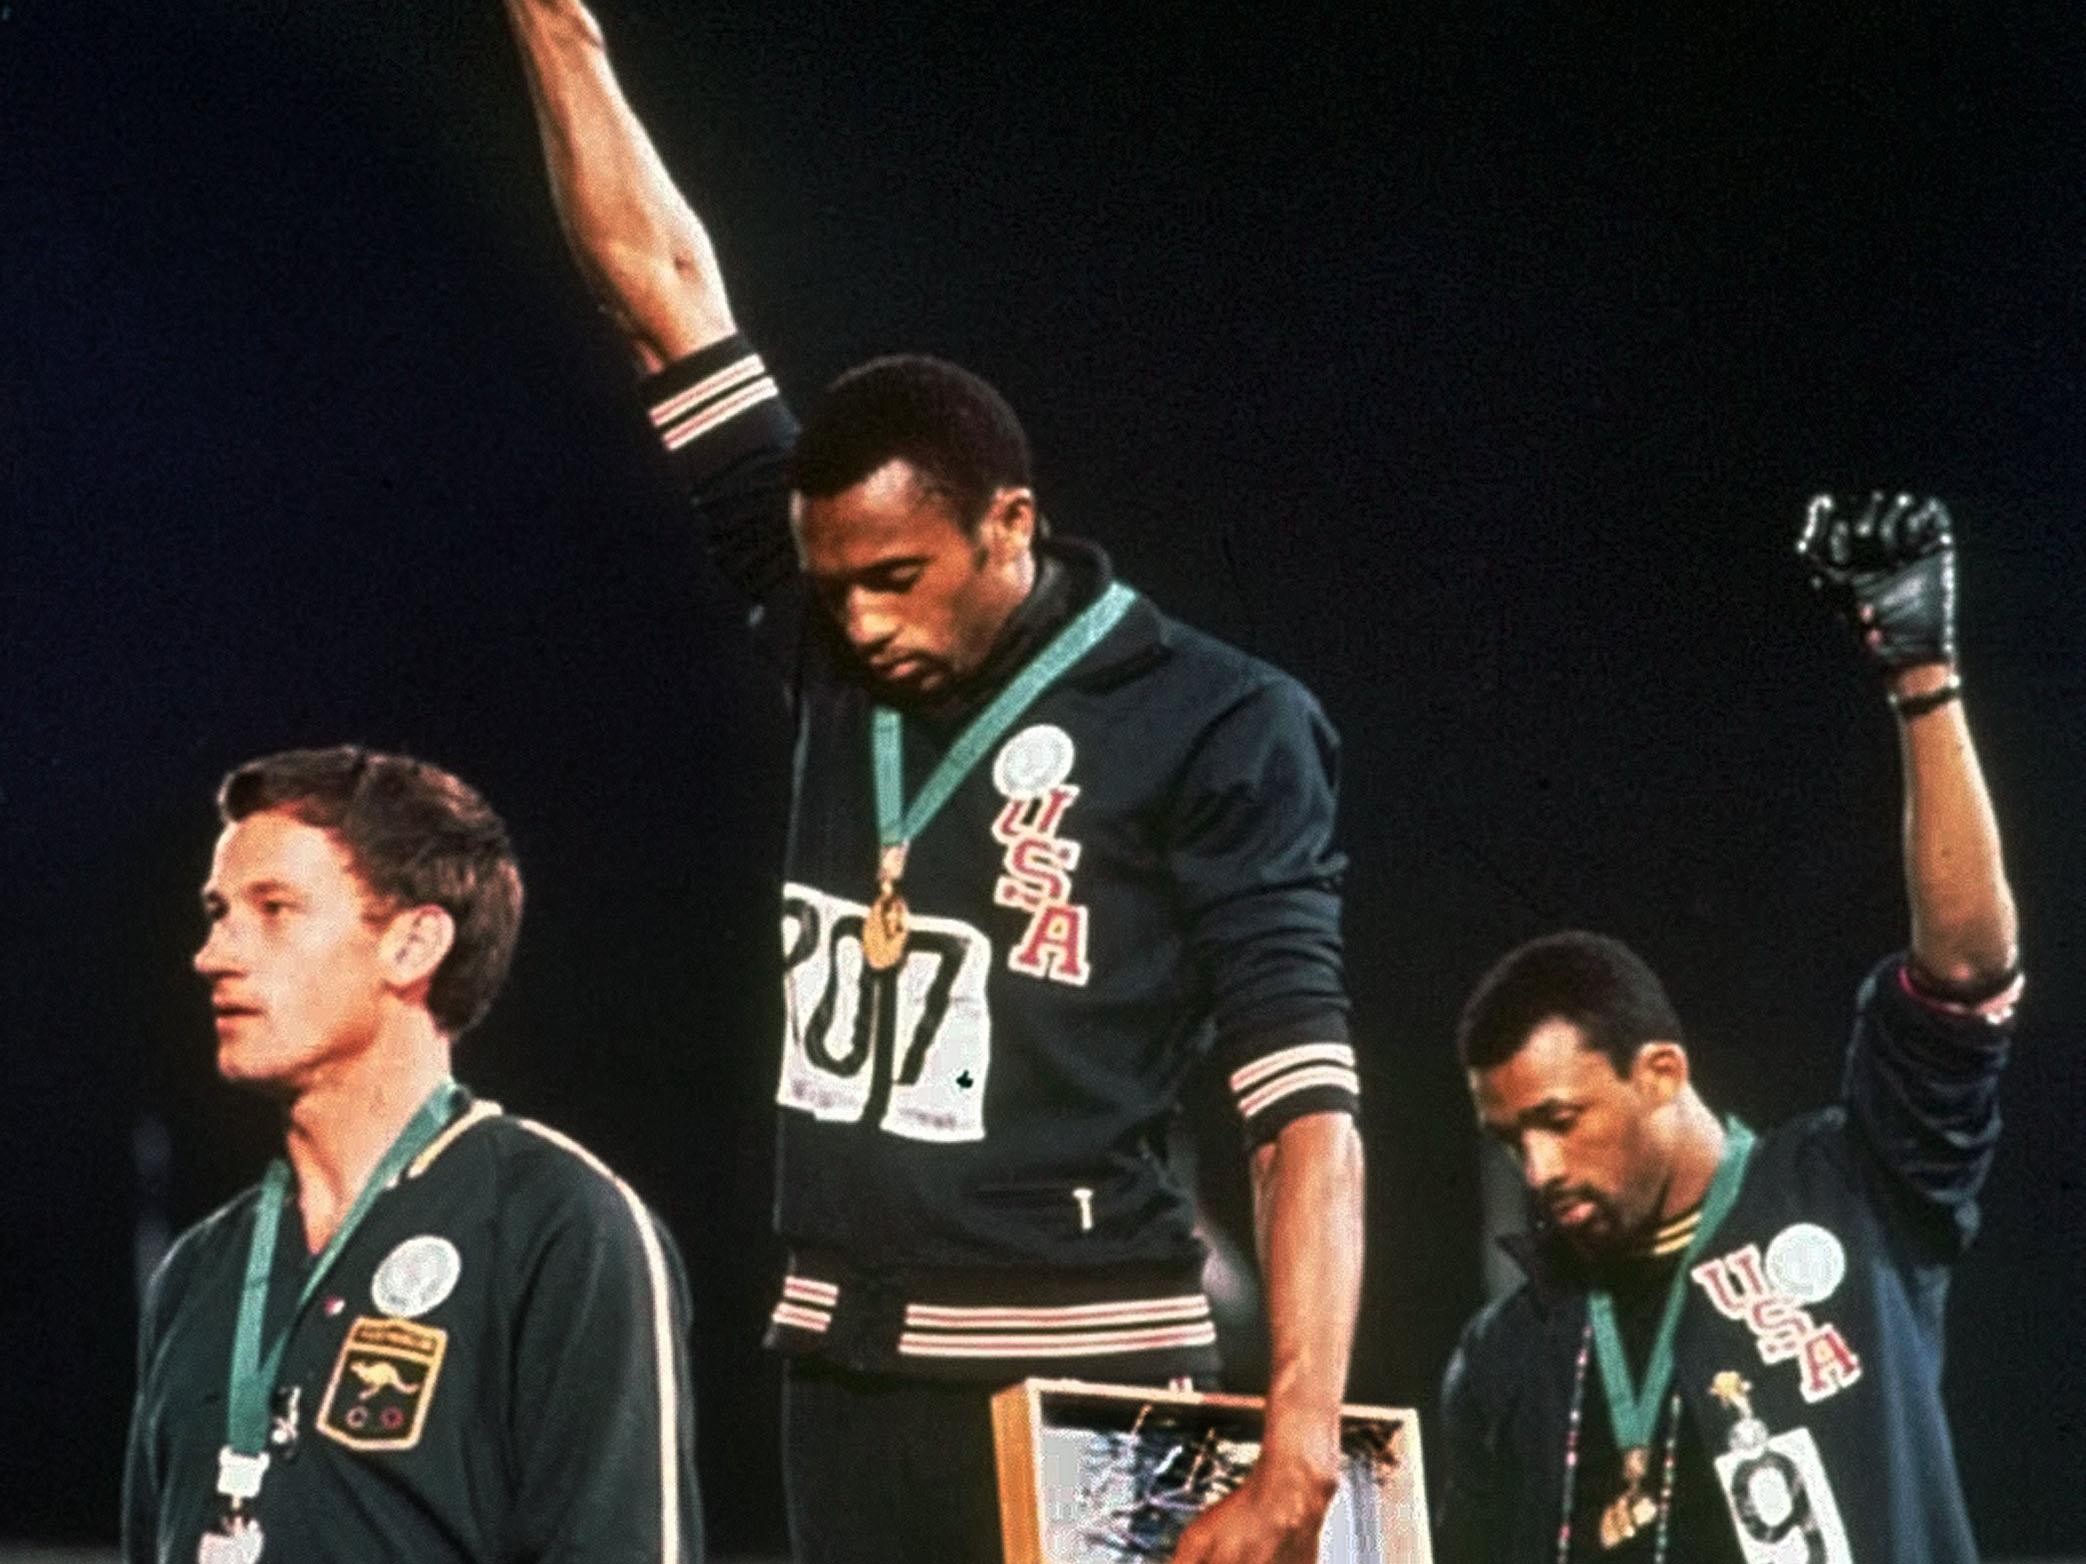 Τι απέγινε ο λευκός ολυμπιονίκης που δεν «μάσησε» πάνω στο βάθρο το 1968;